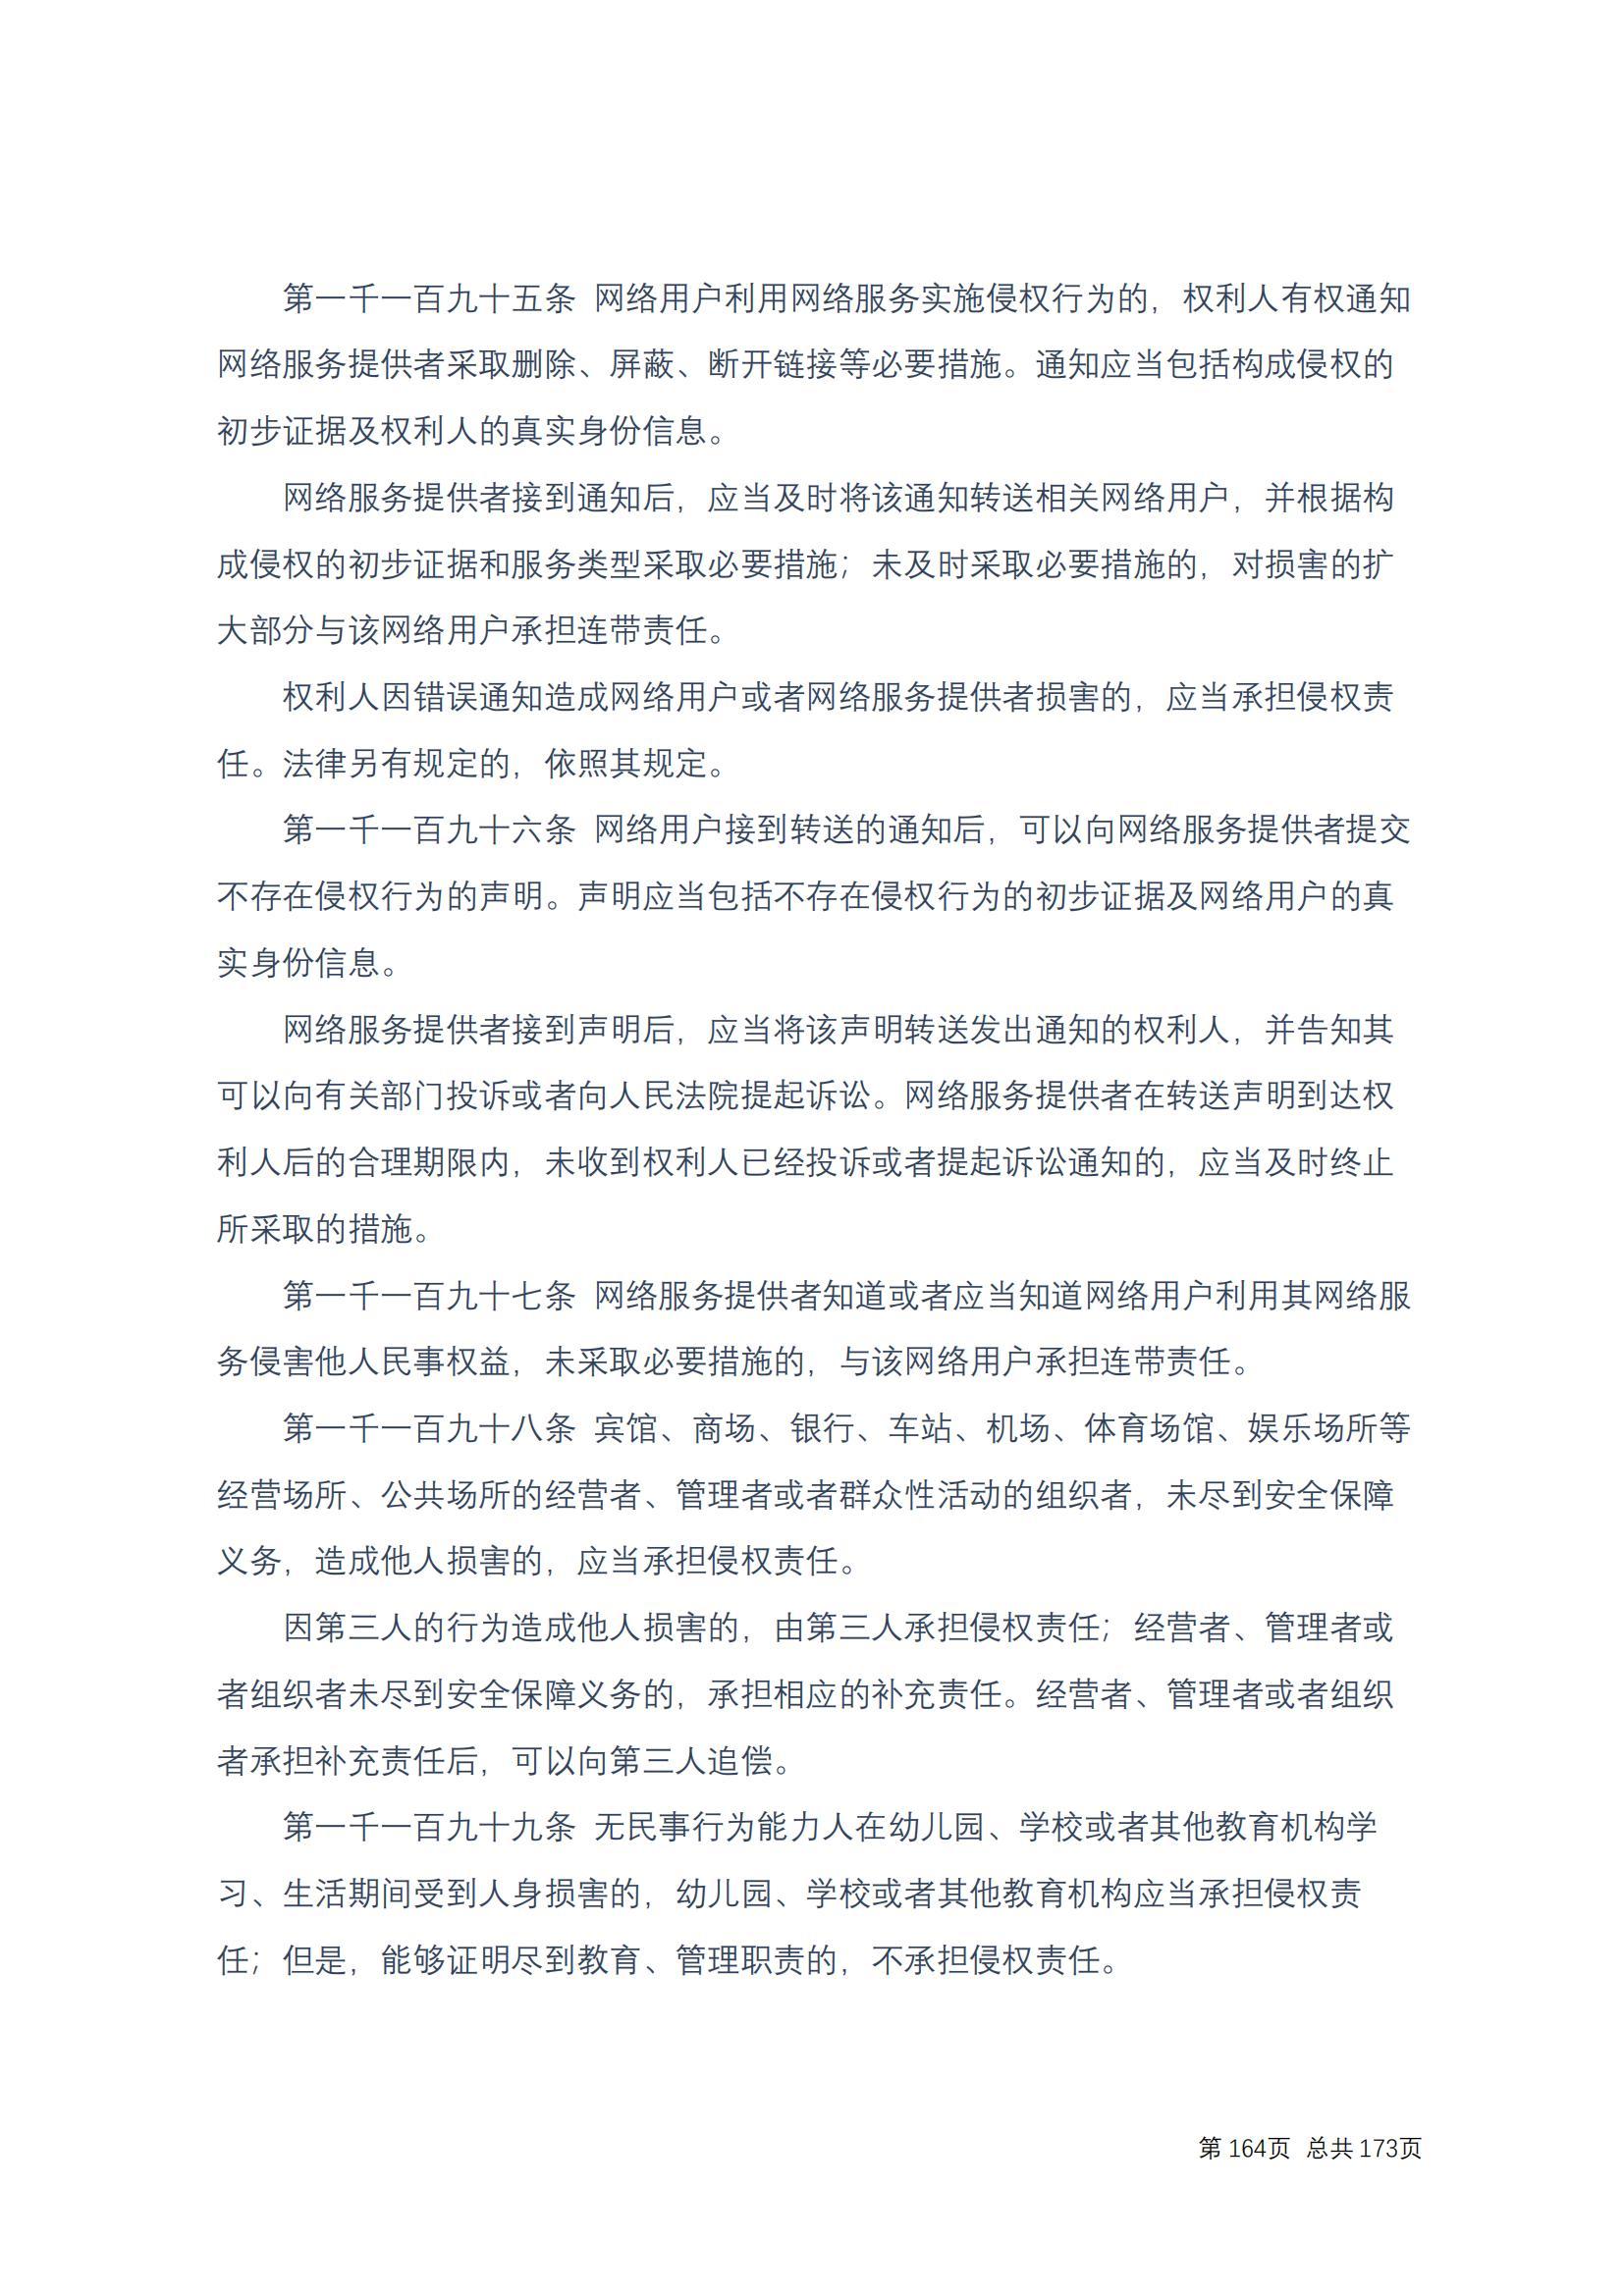 中华人民共和国民法典 修改过_163